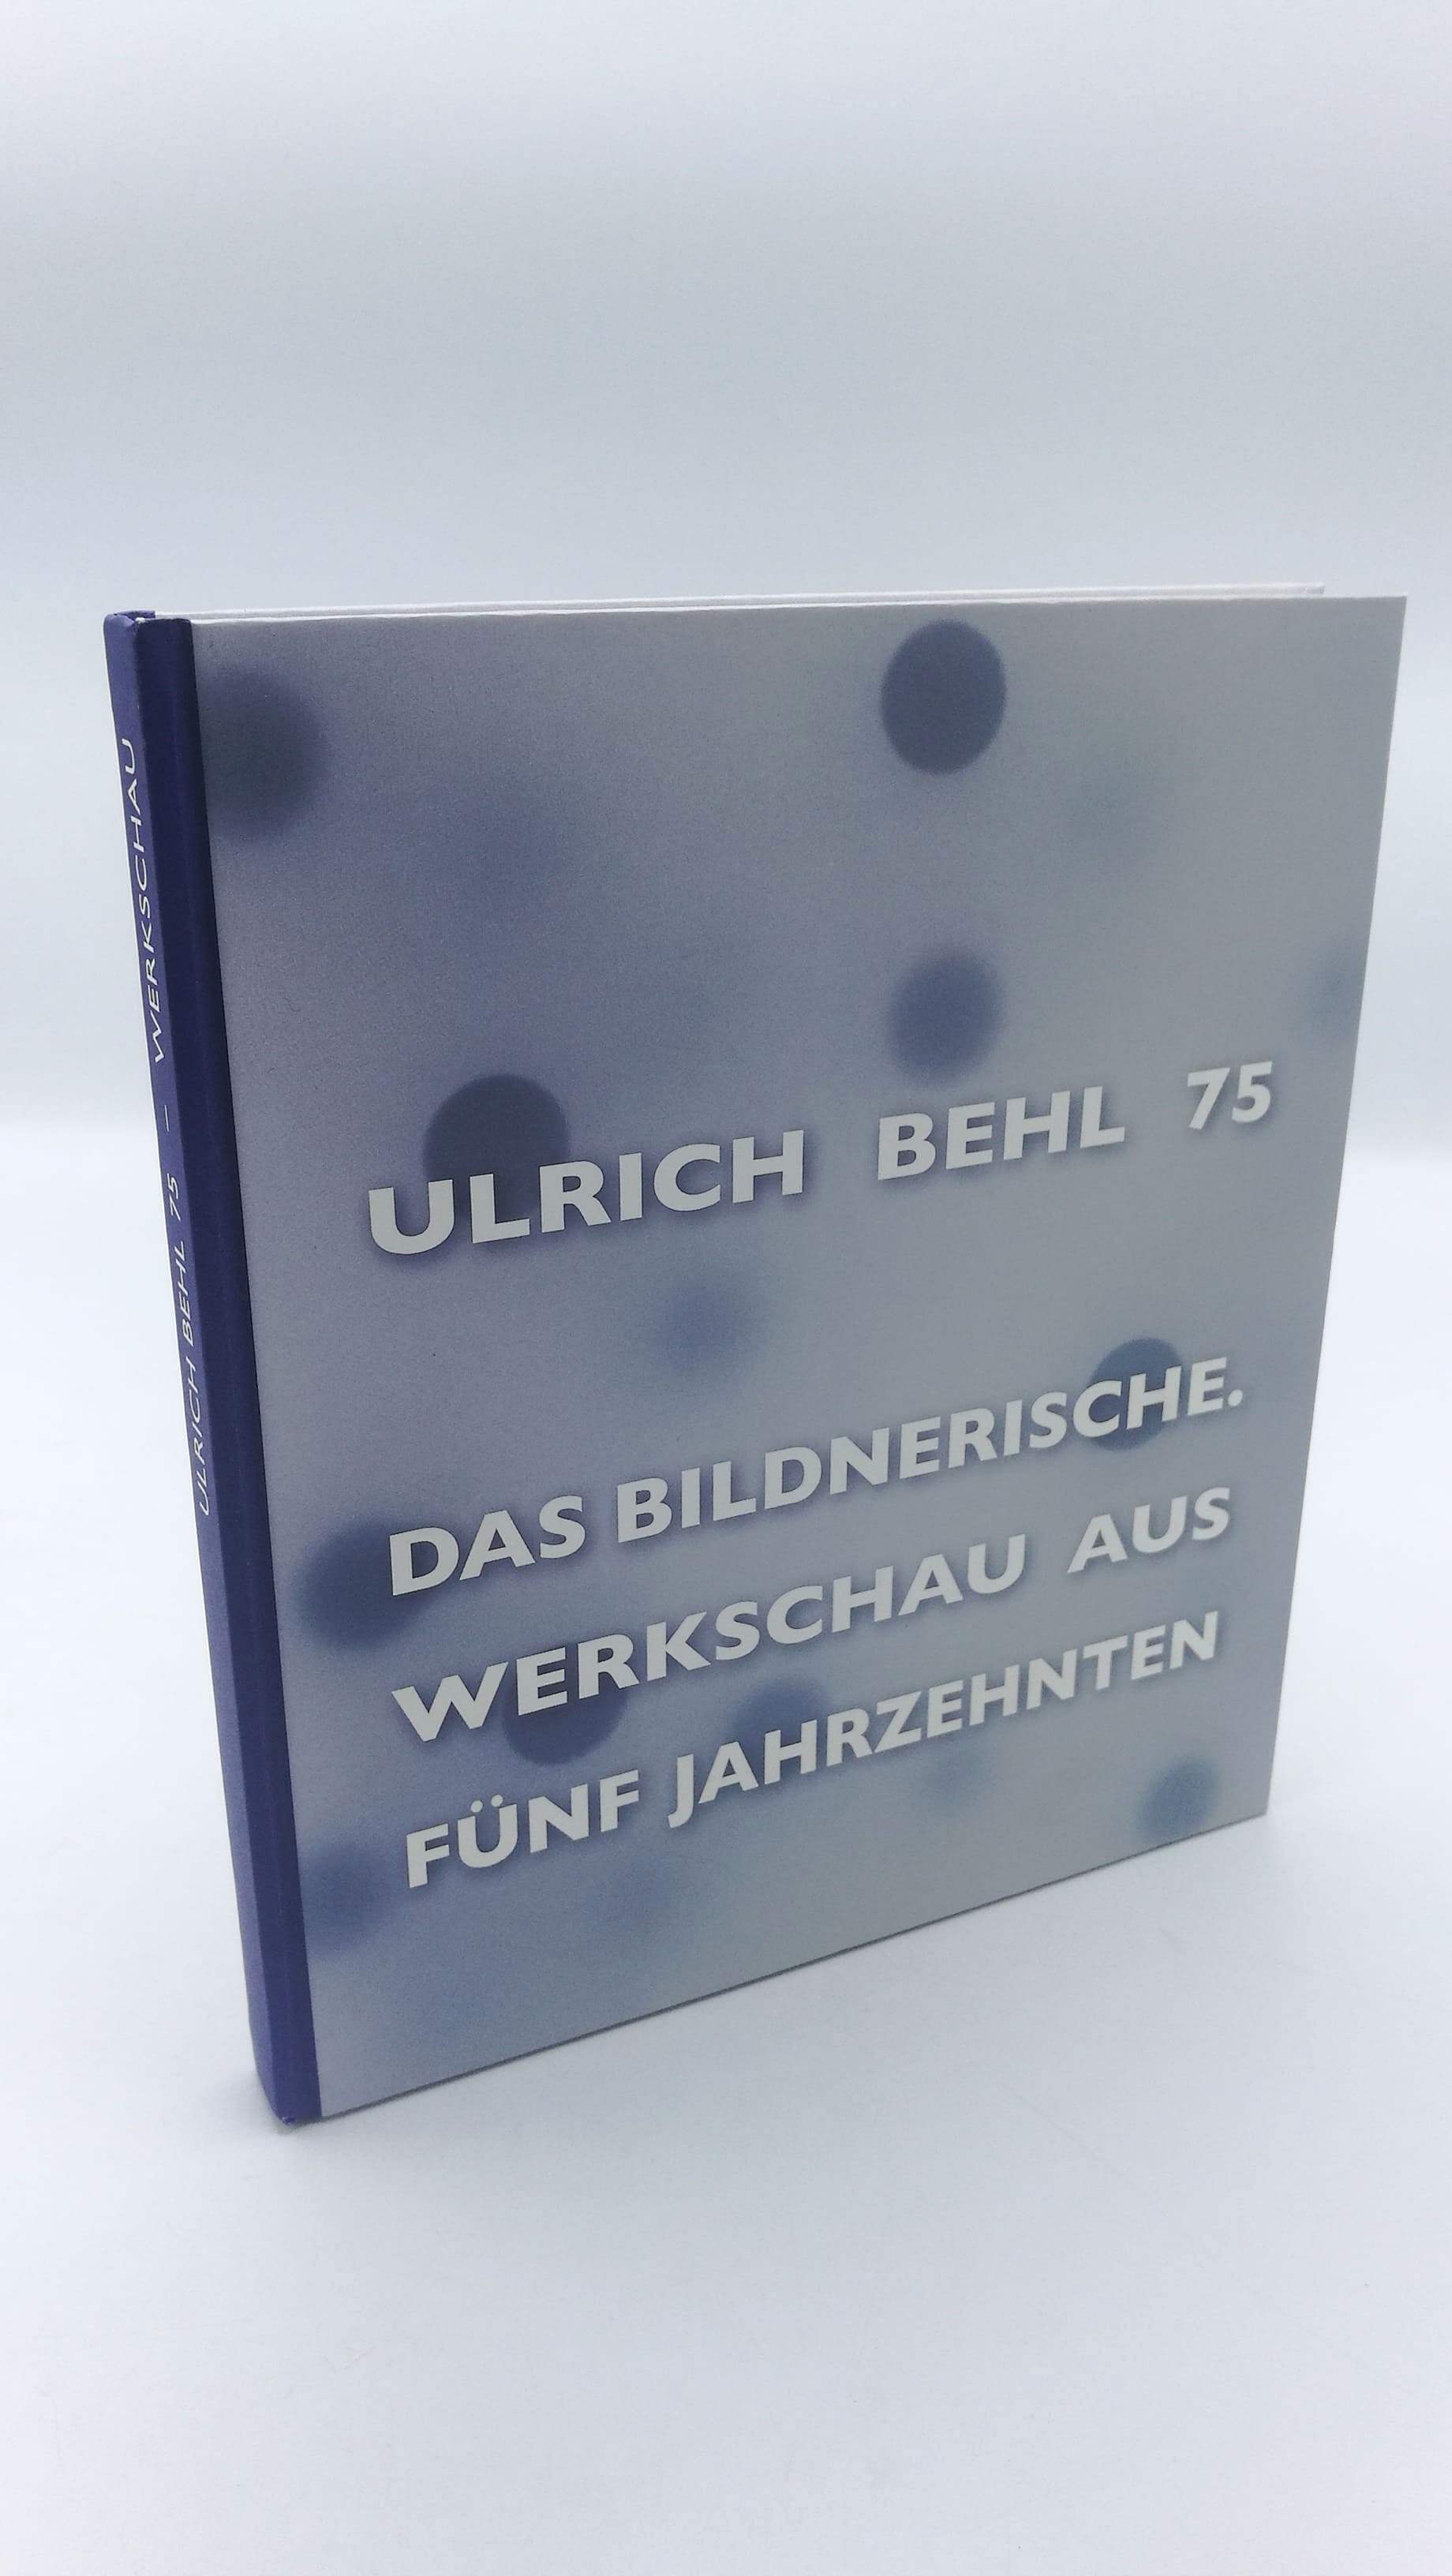 Ulrich Behl 75 Das Bildnerische, Werkschau aus fünf Jahrzehnten, - Bärbel Manitz